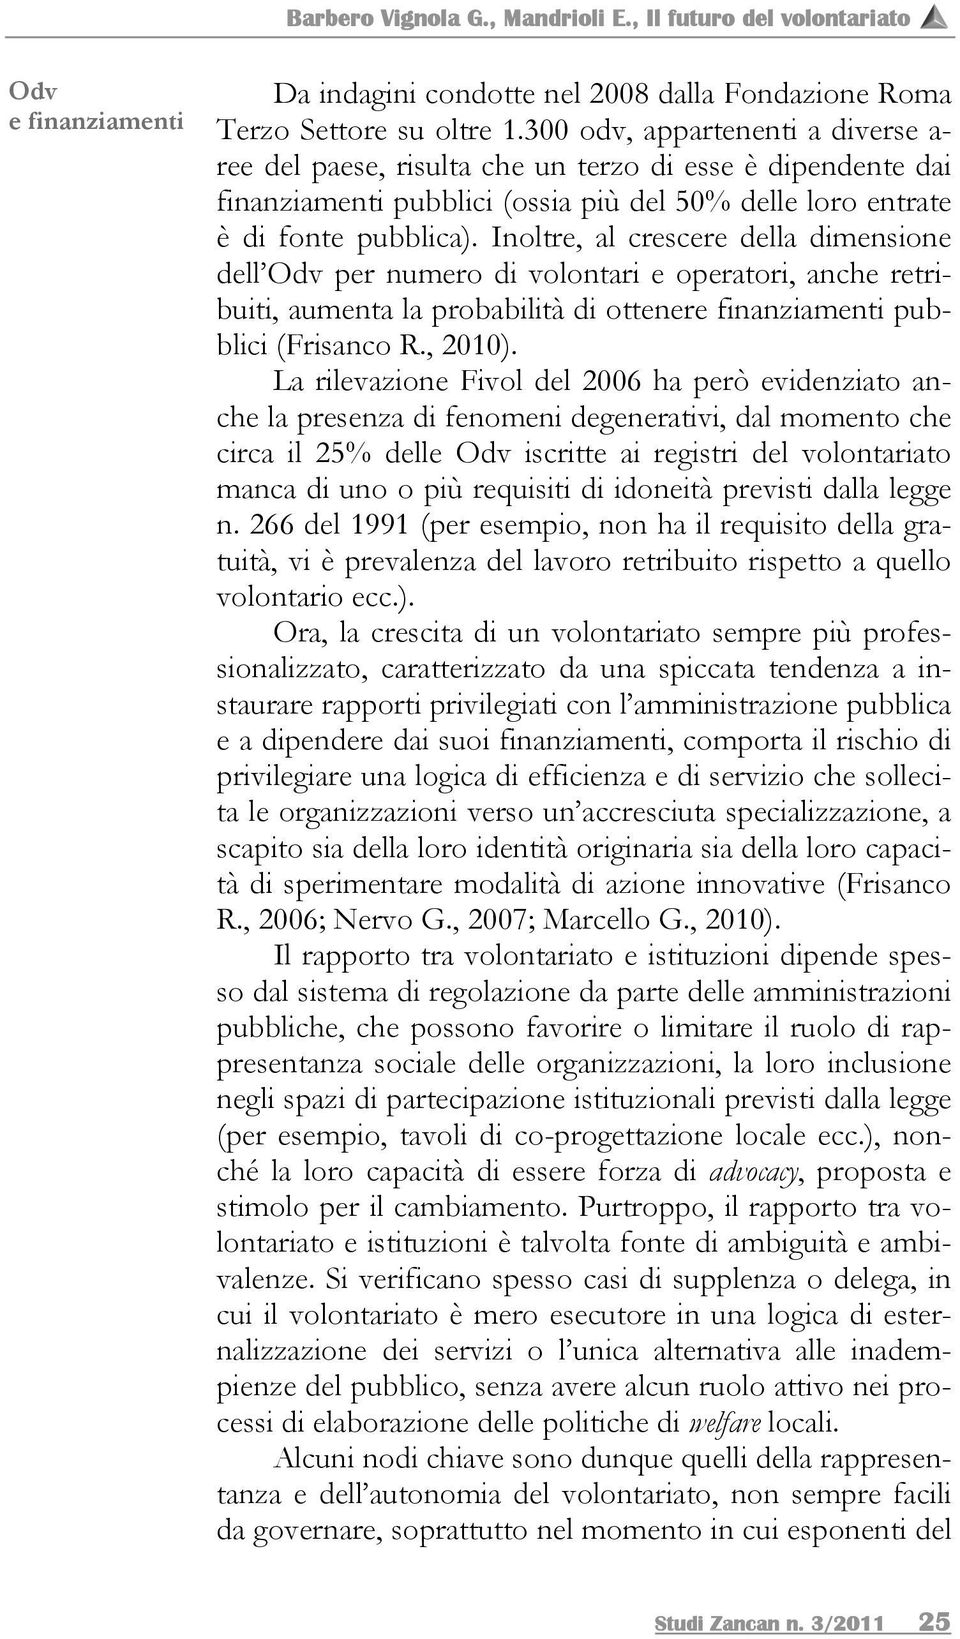 Inoltre, al crescere della dimensione dell Odv per numero di volontari e operatori, anche retribuiti, aumenta la probabilità di ottenere finanziamenti pubblici (Frisanco R., 2010).